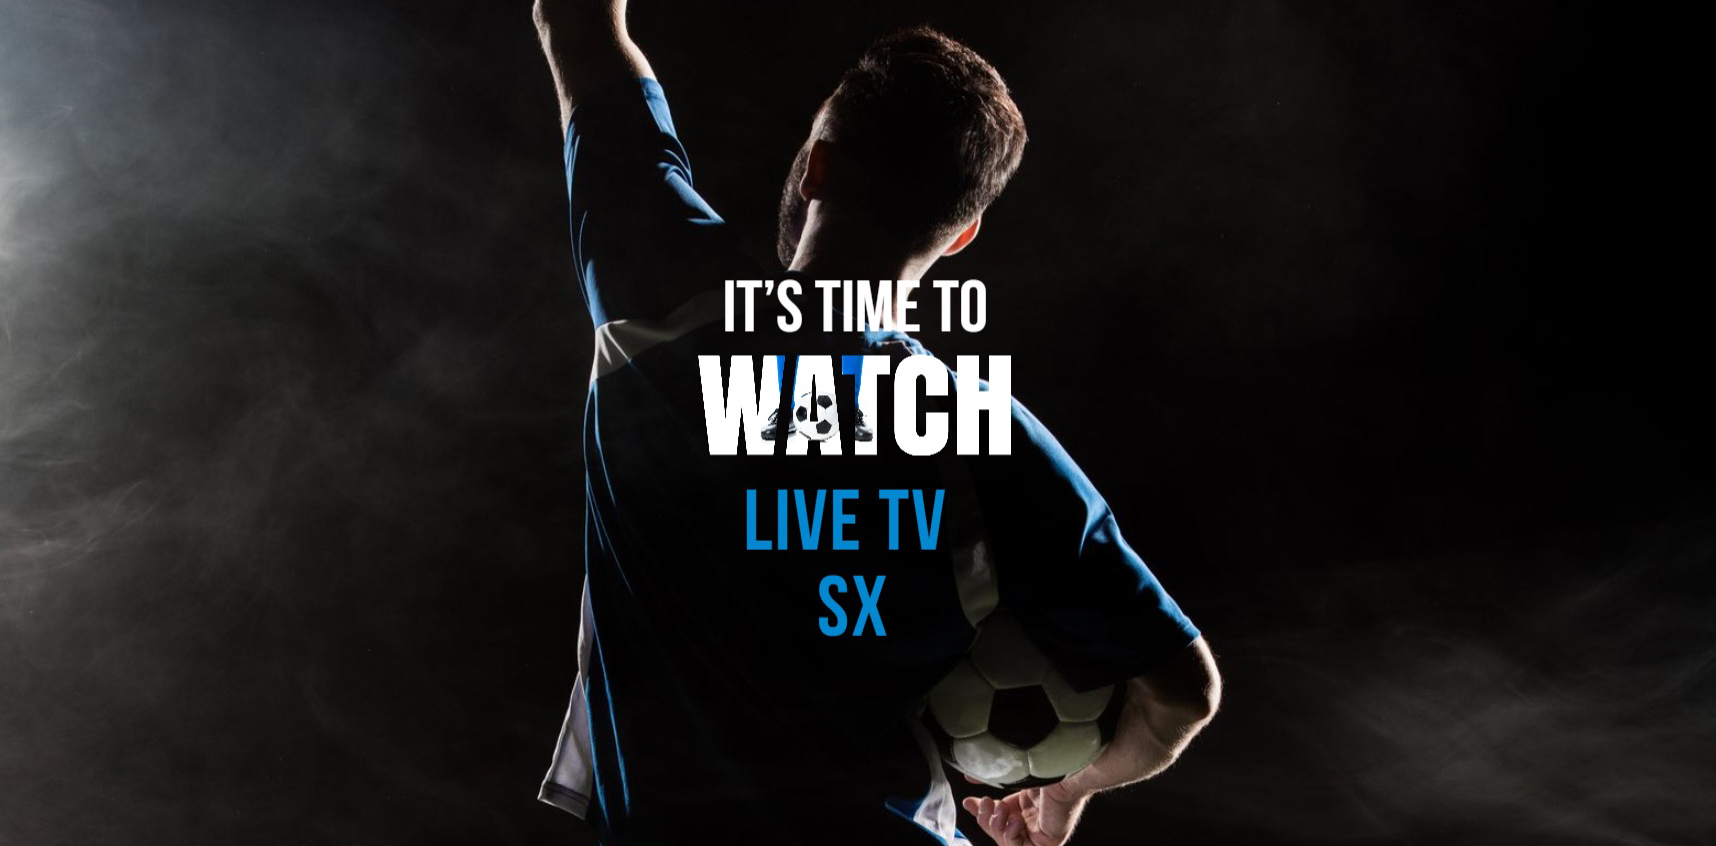 TV SX uživo: besplatno gledajte sportski prijenos uživo